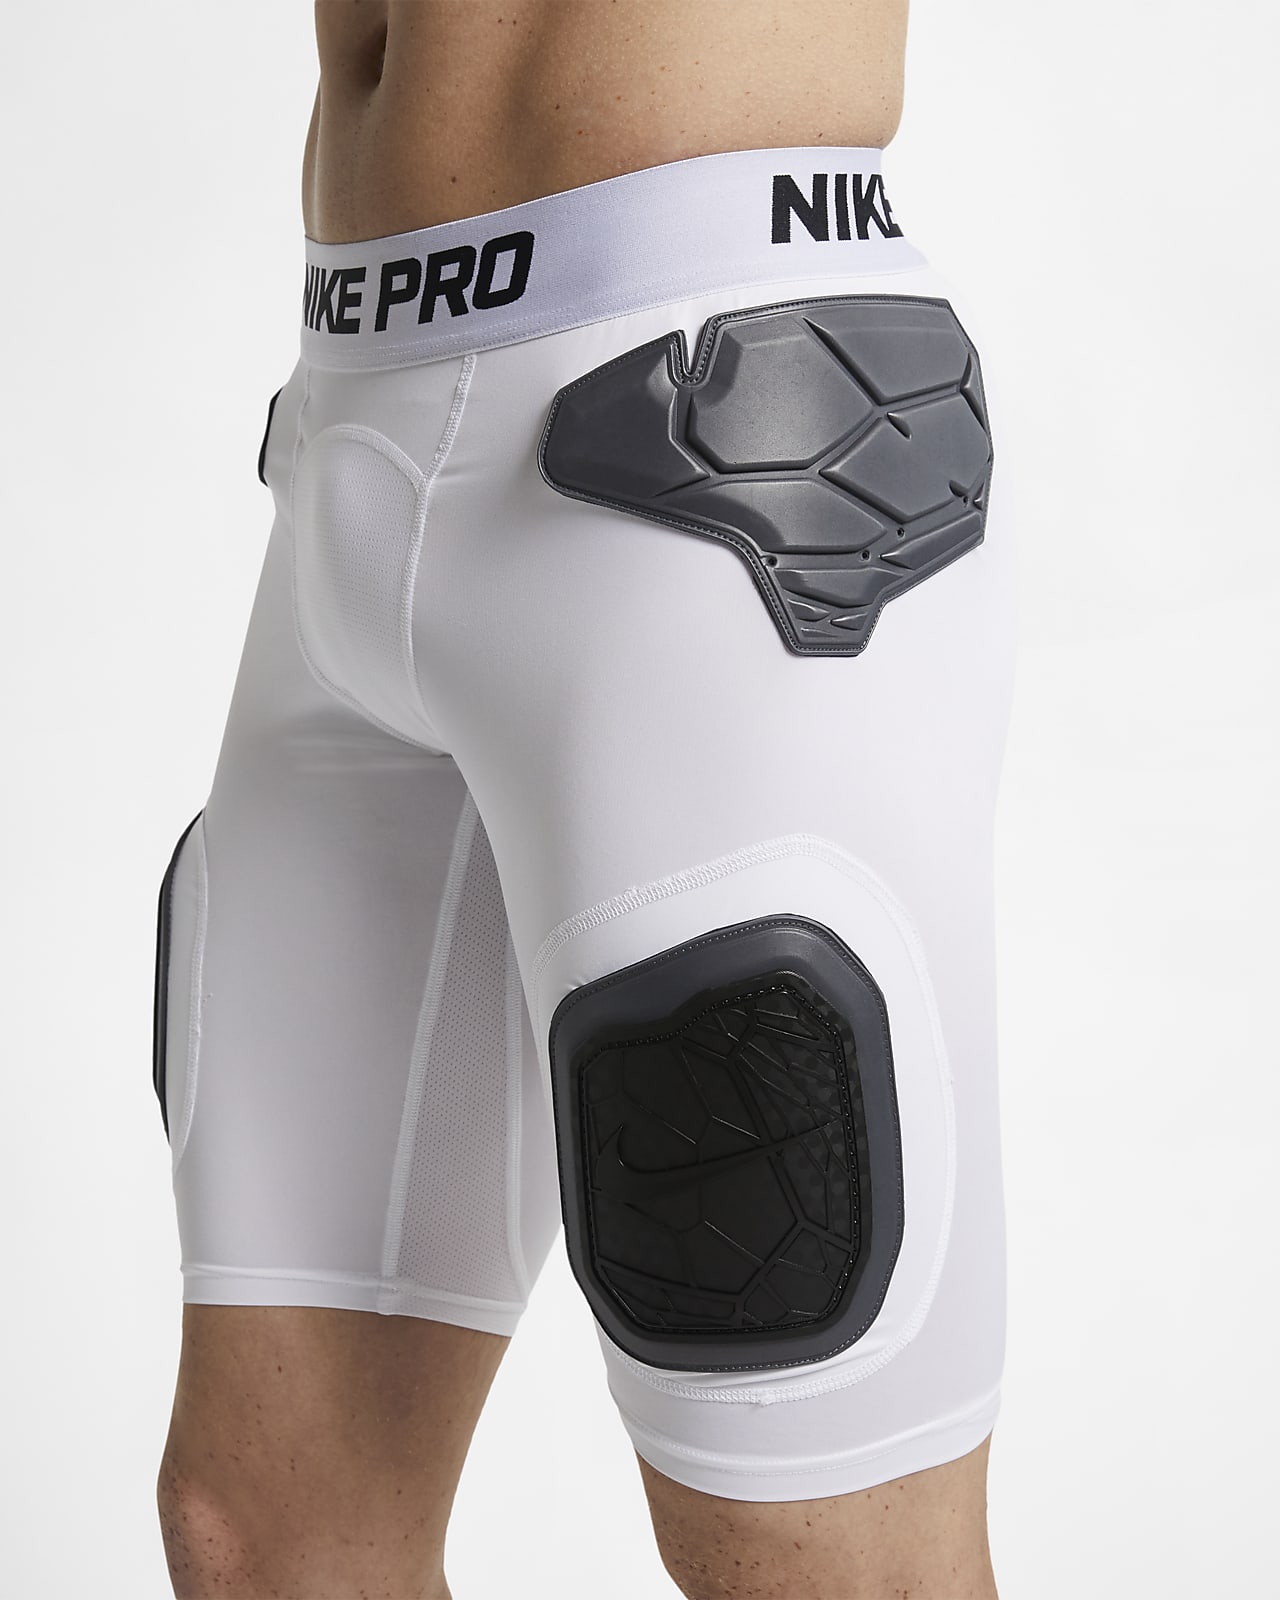 Nike Men's Shorts. Nike.com